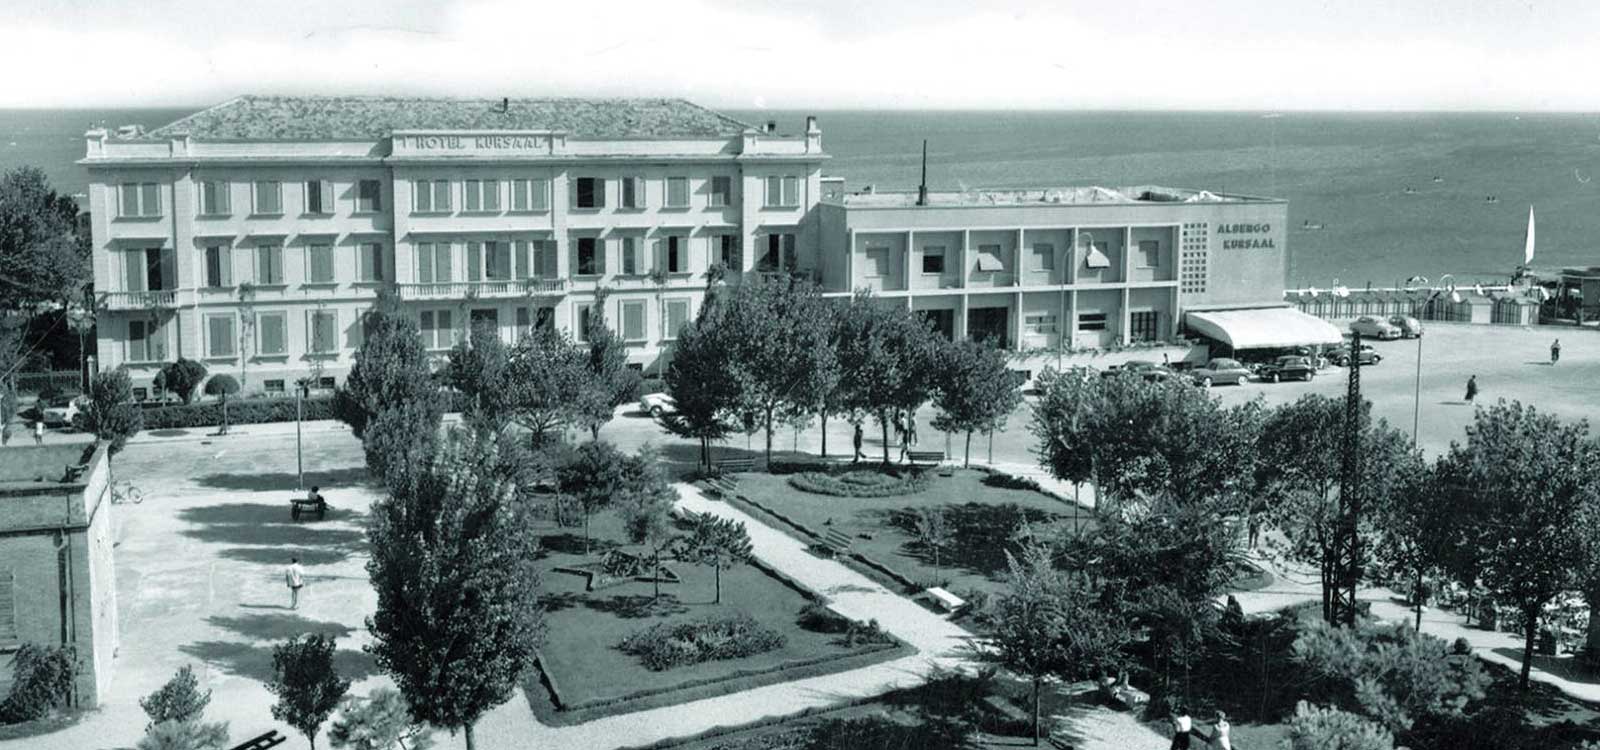 Immagine storica dell'Hotel Kursaal a Cattolica